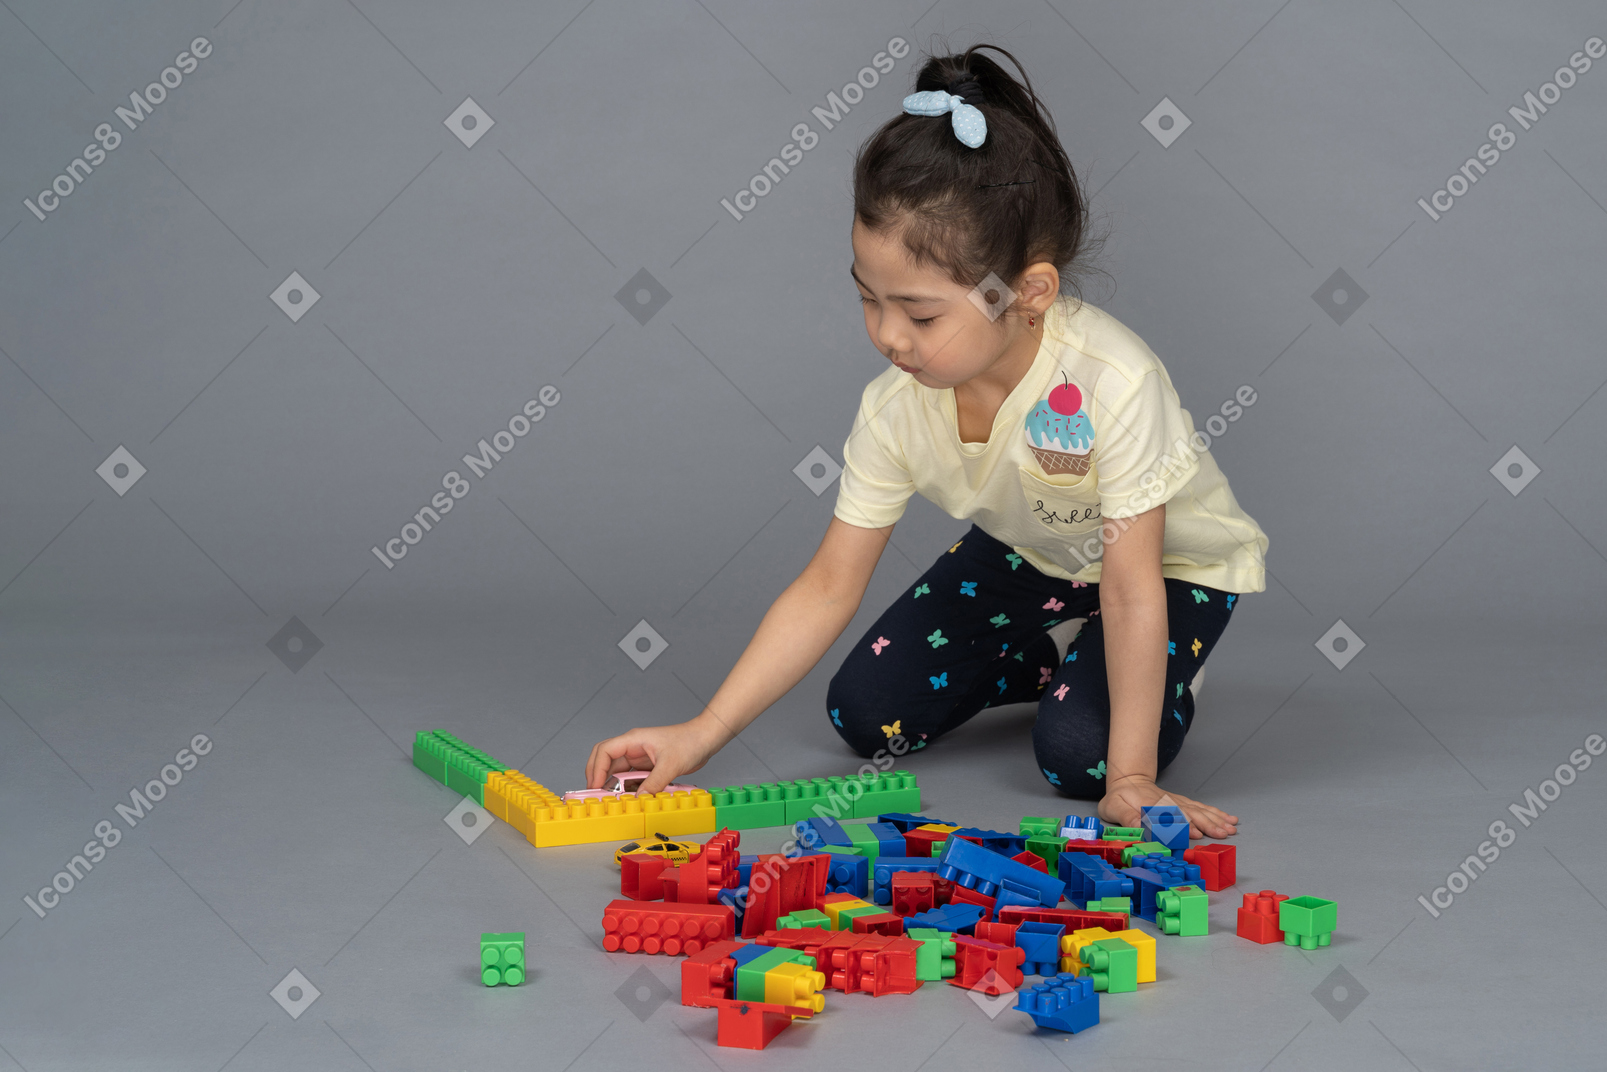 Маленькая девочка играет со строительными блоками